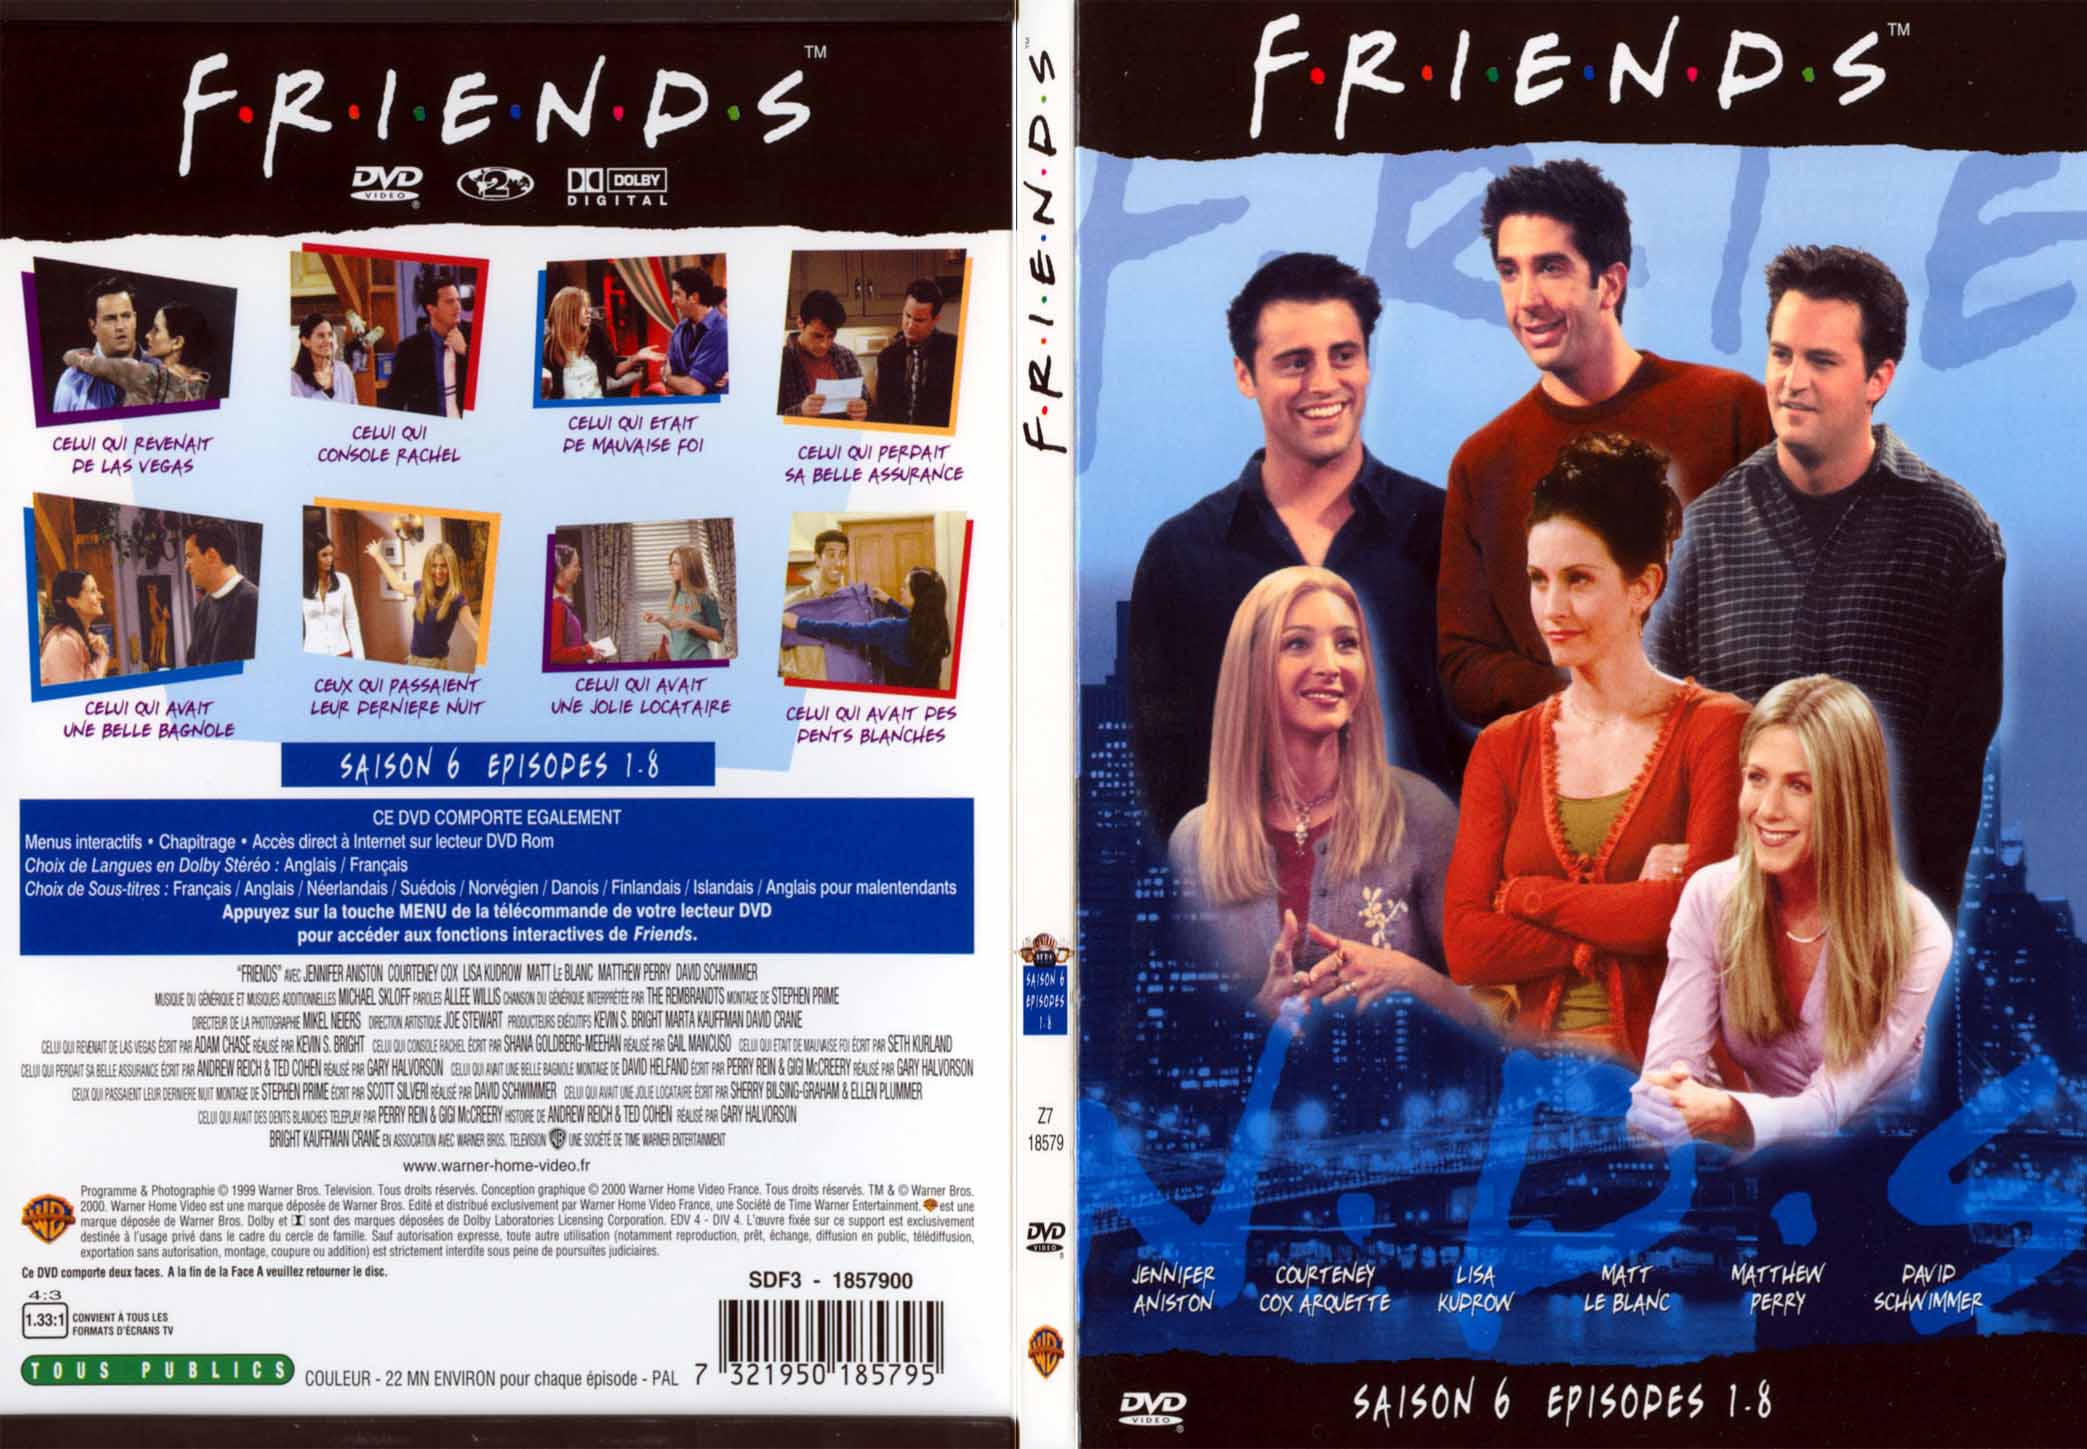 Jaquette DVD Friends saison 6 dvd 1 - SLIM